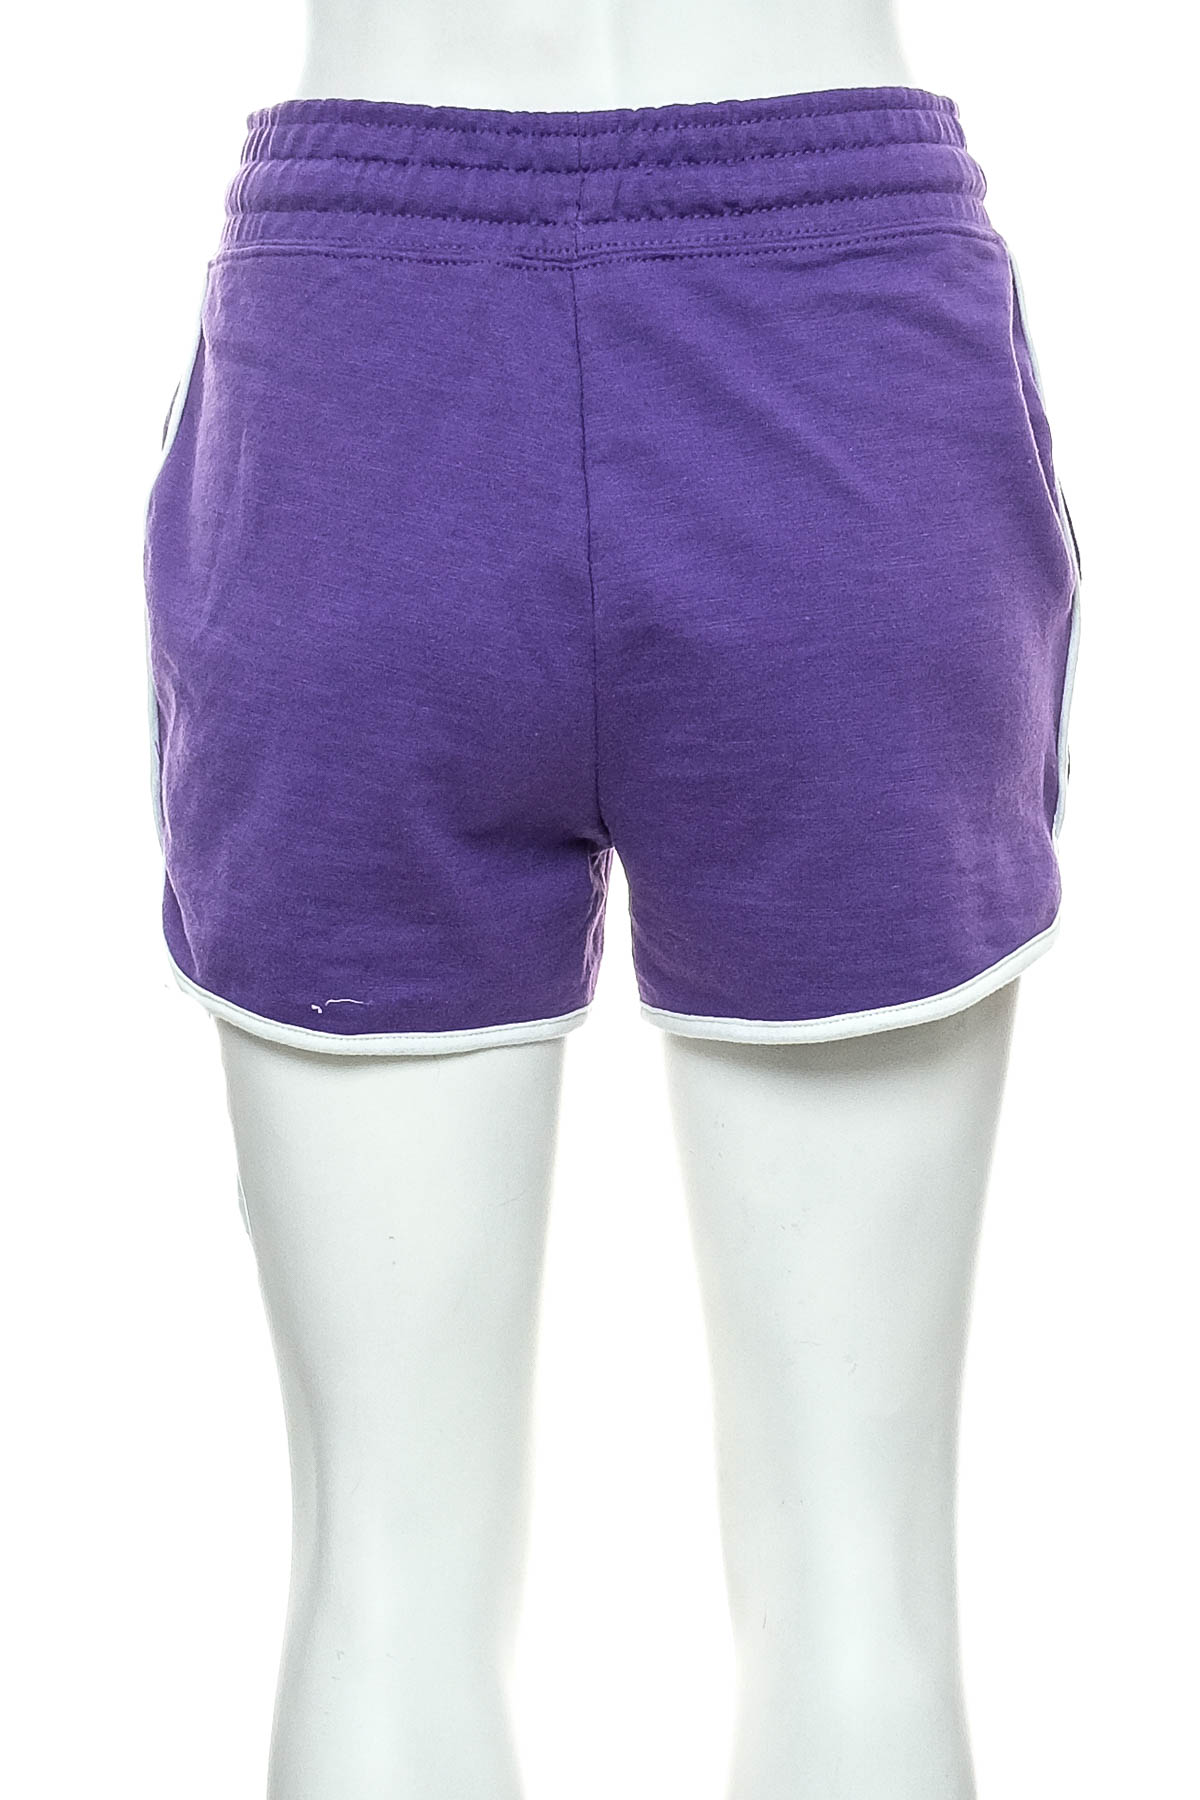 Female shorts - Dunnes - 1